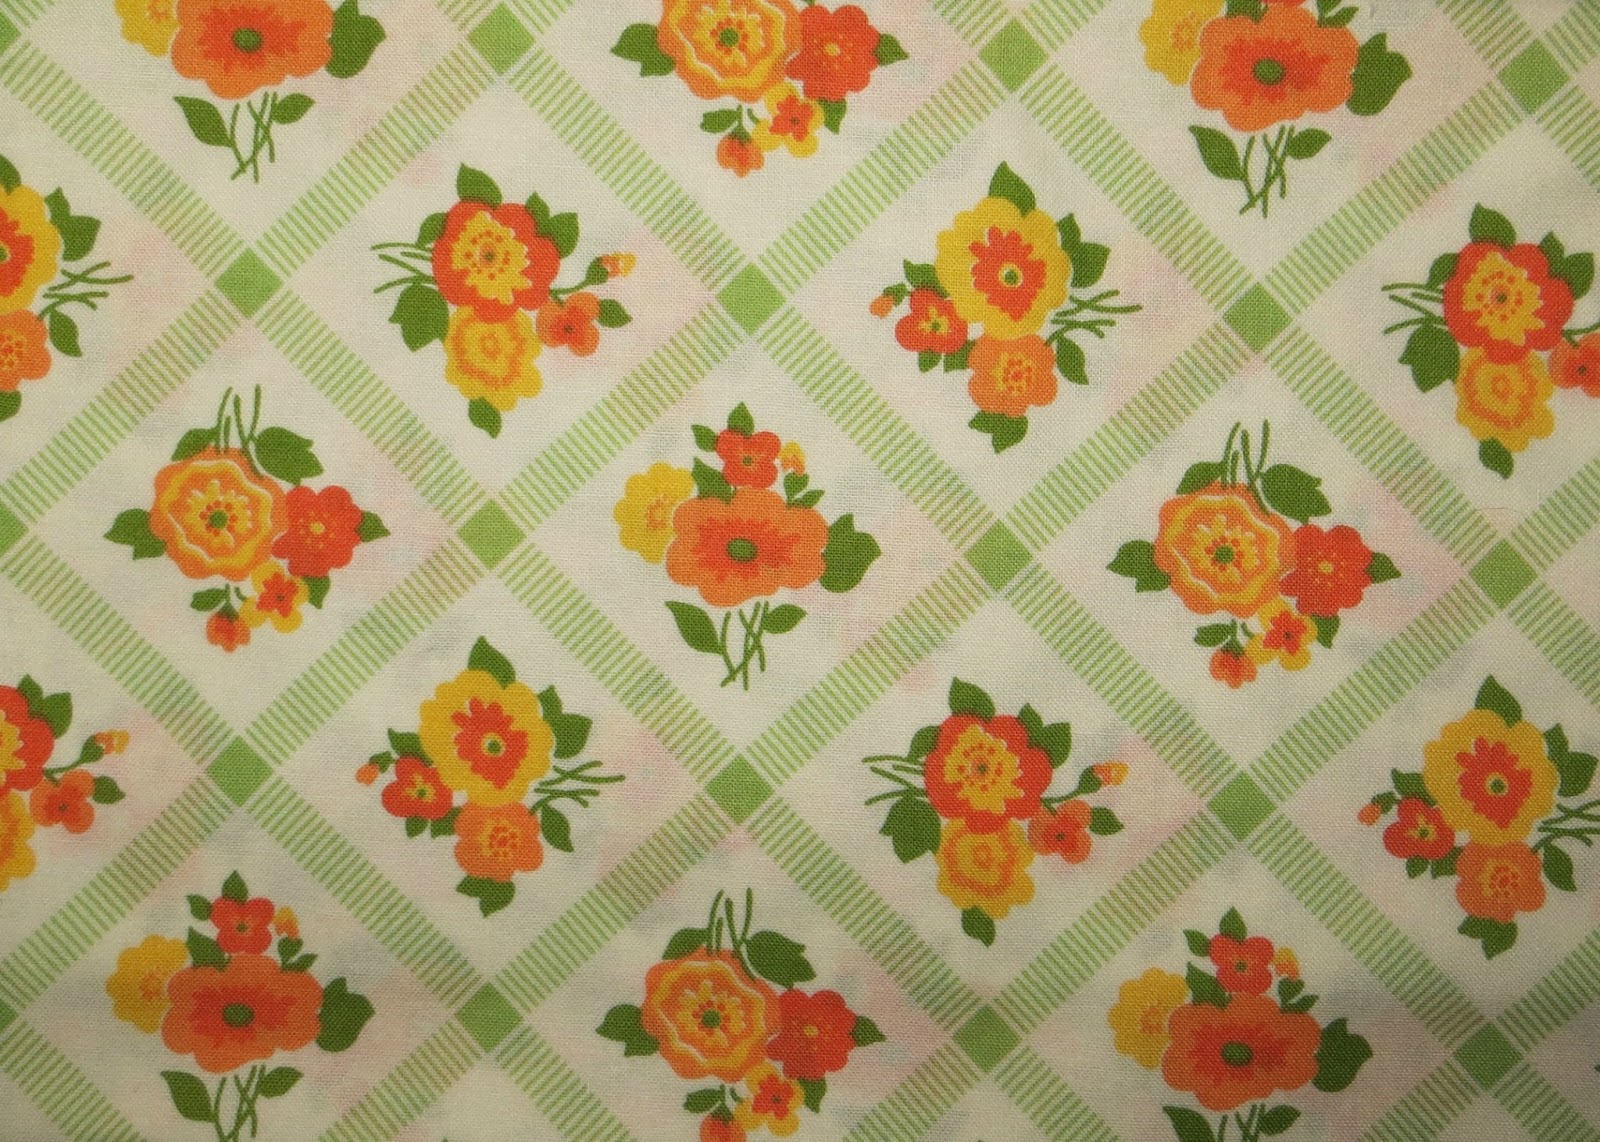 70s wallpaper,pattern,orange,green,leaf,floral design